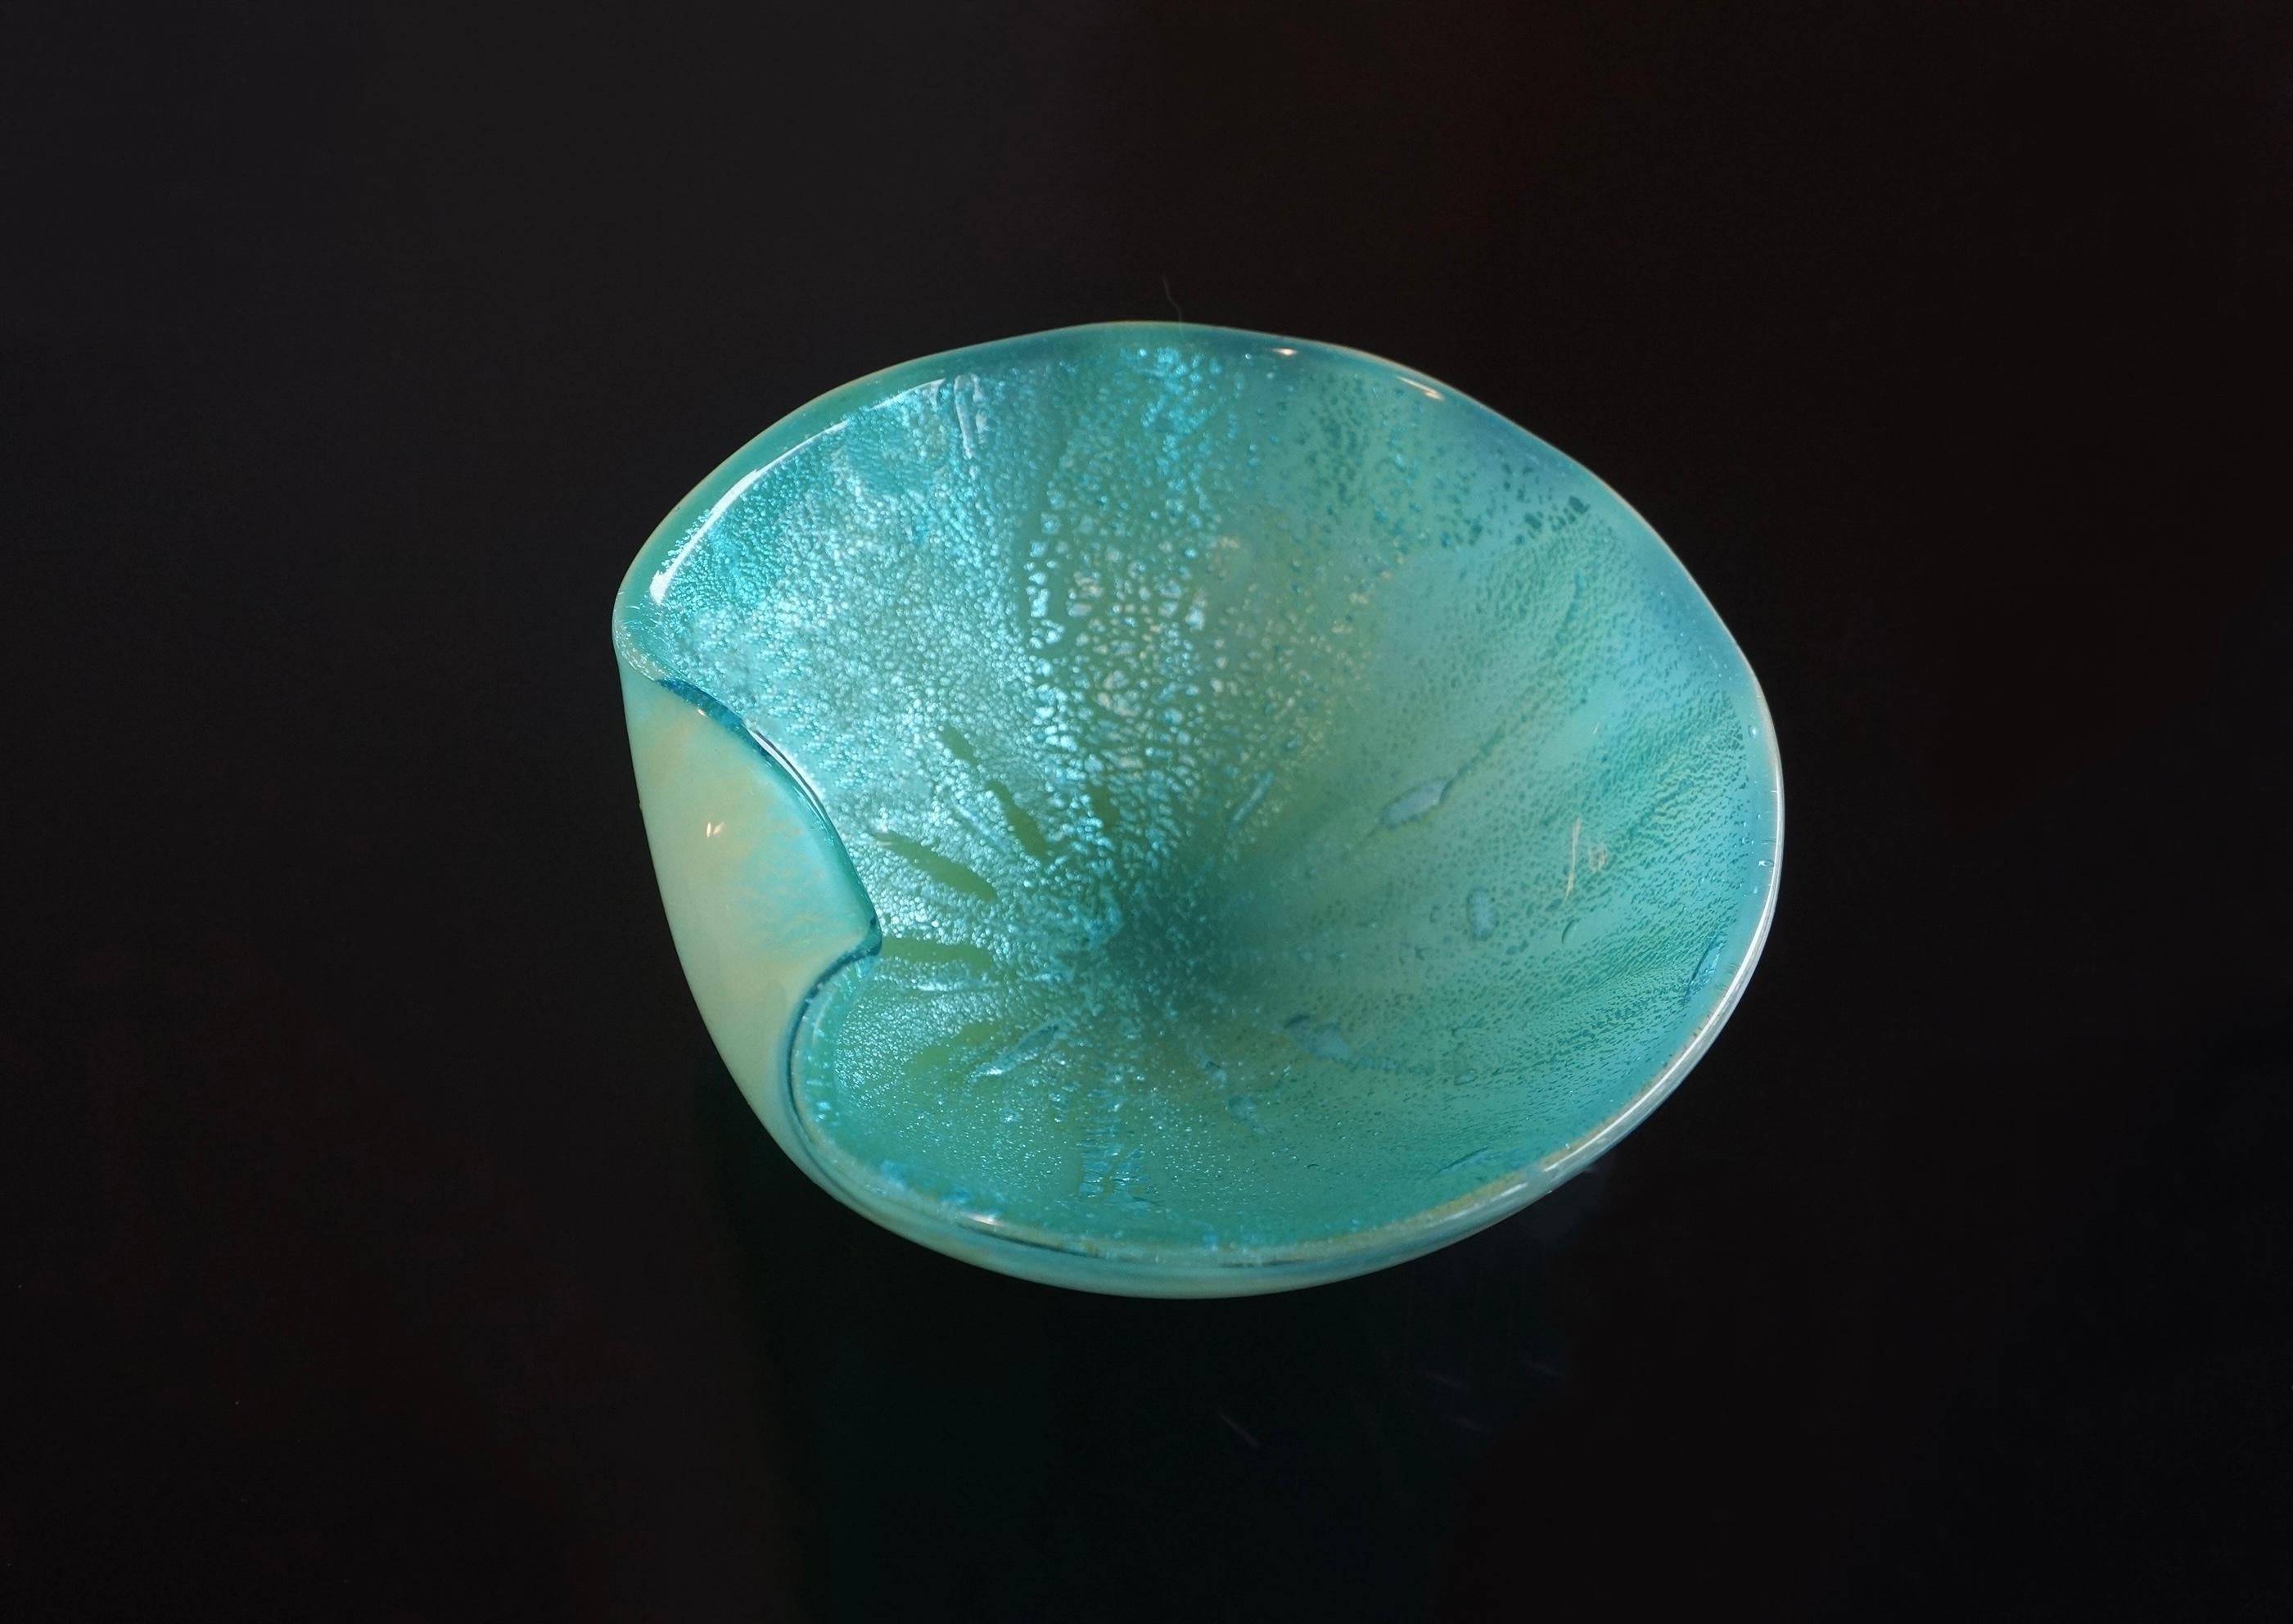 Spectaculaire plat décoratif en verre d'art de Murano bleu et notes de vert aqua, attribué à Archimede Murano. Ce bol est fait de verre d'art bleu avec des mouchetures d'aventurine dans les tons bleus. L'extérieur est d'une couleur de verre bleu